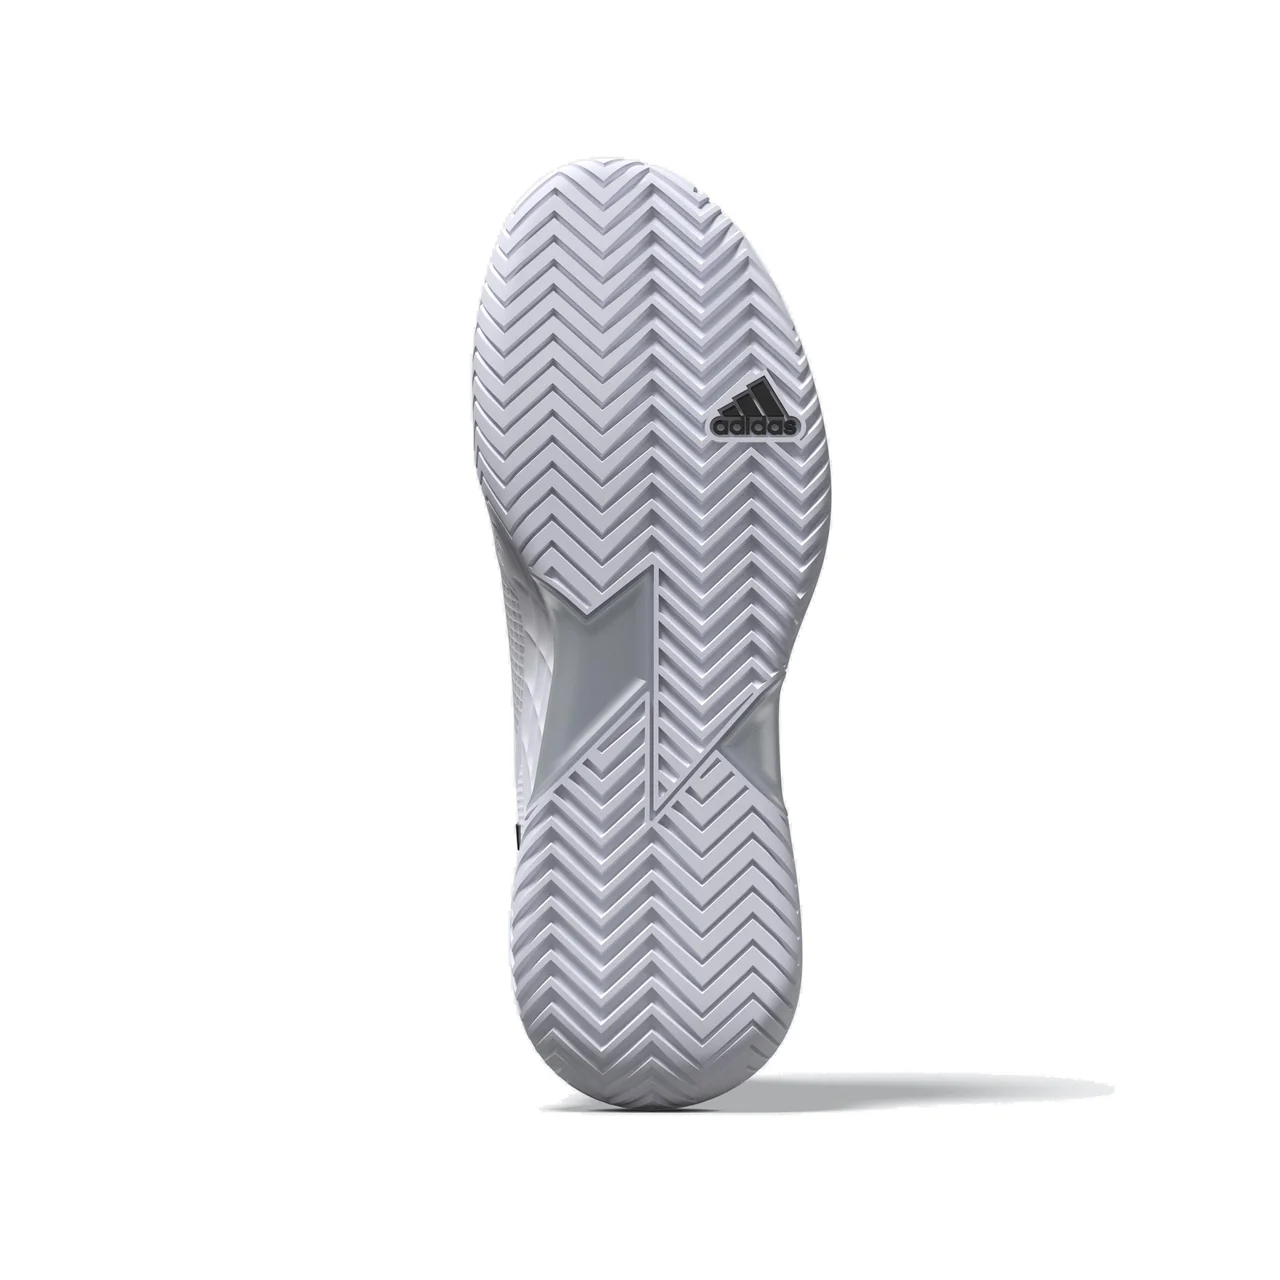 Adidas Adizero Ubersonic 4.1 White